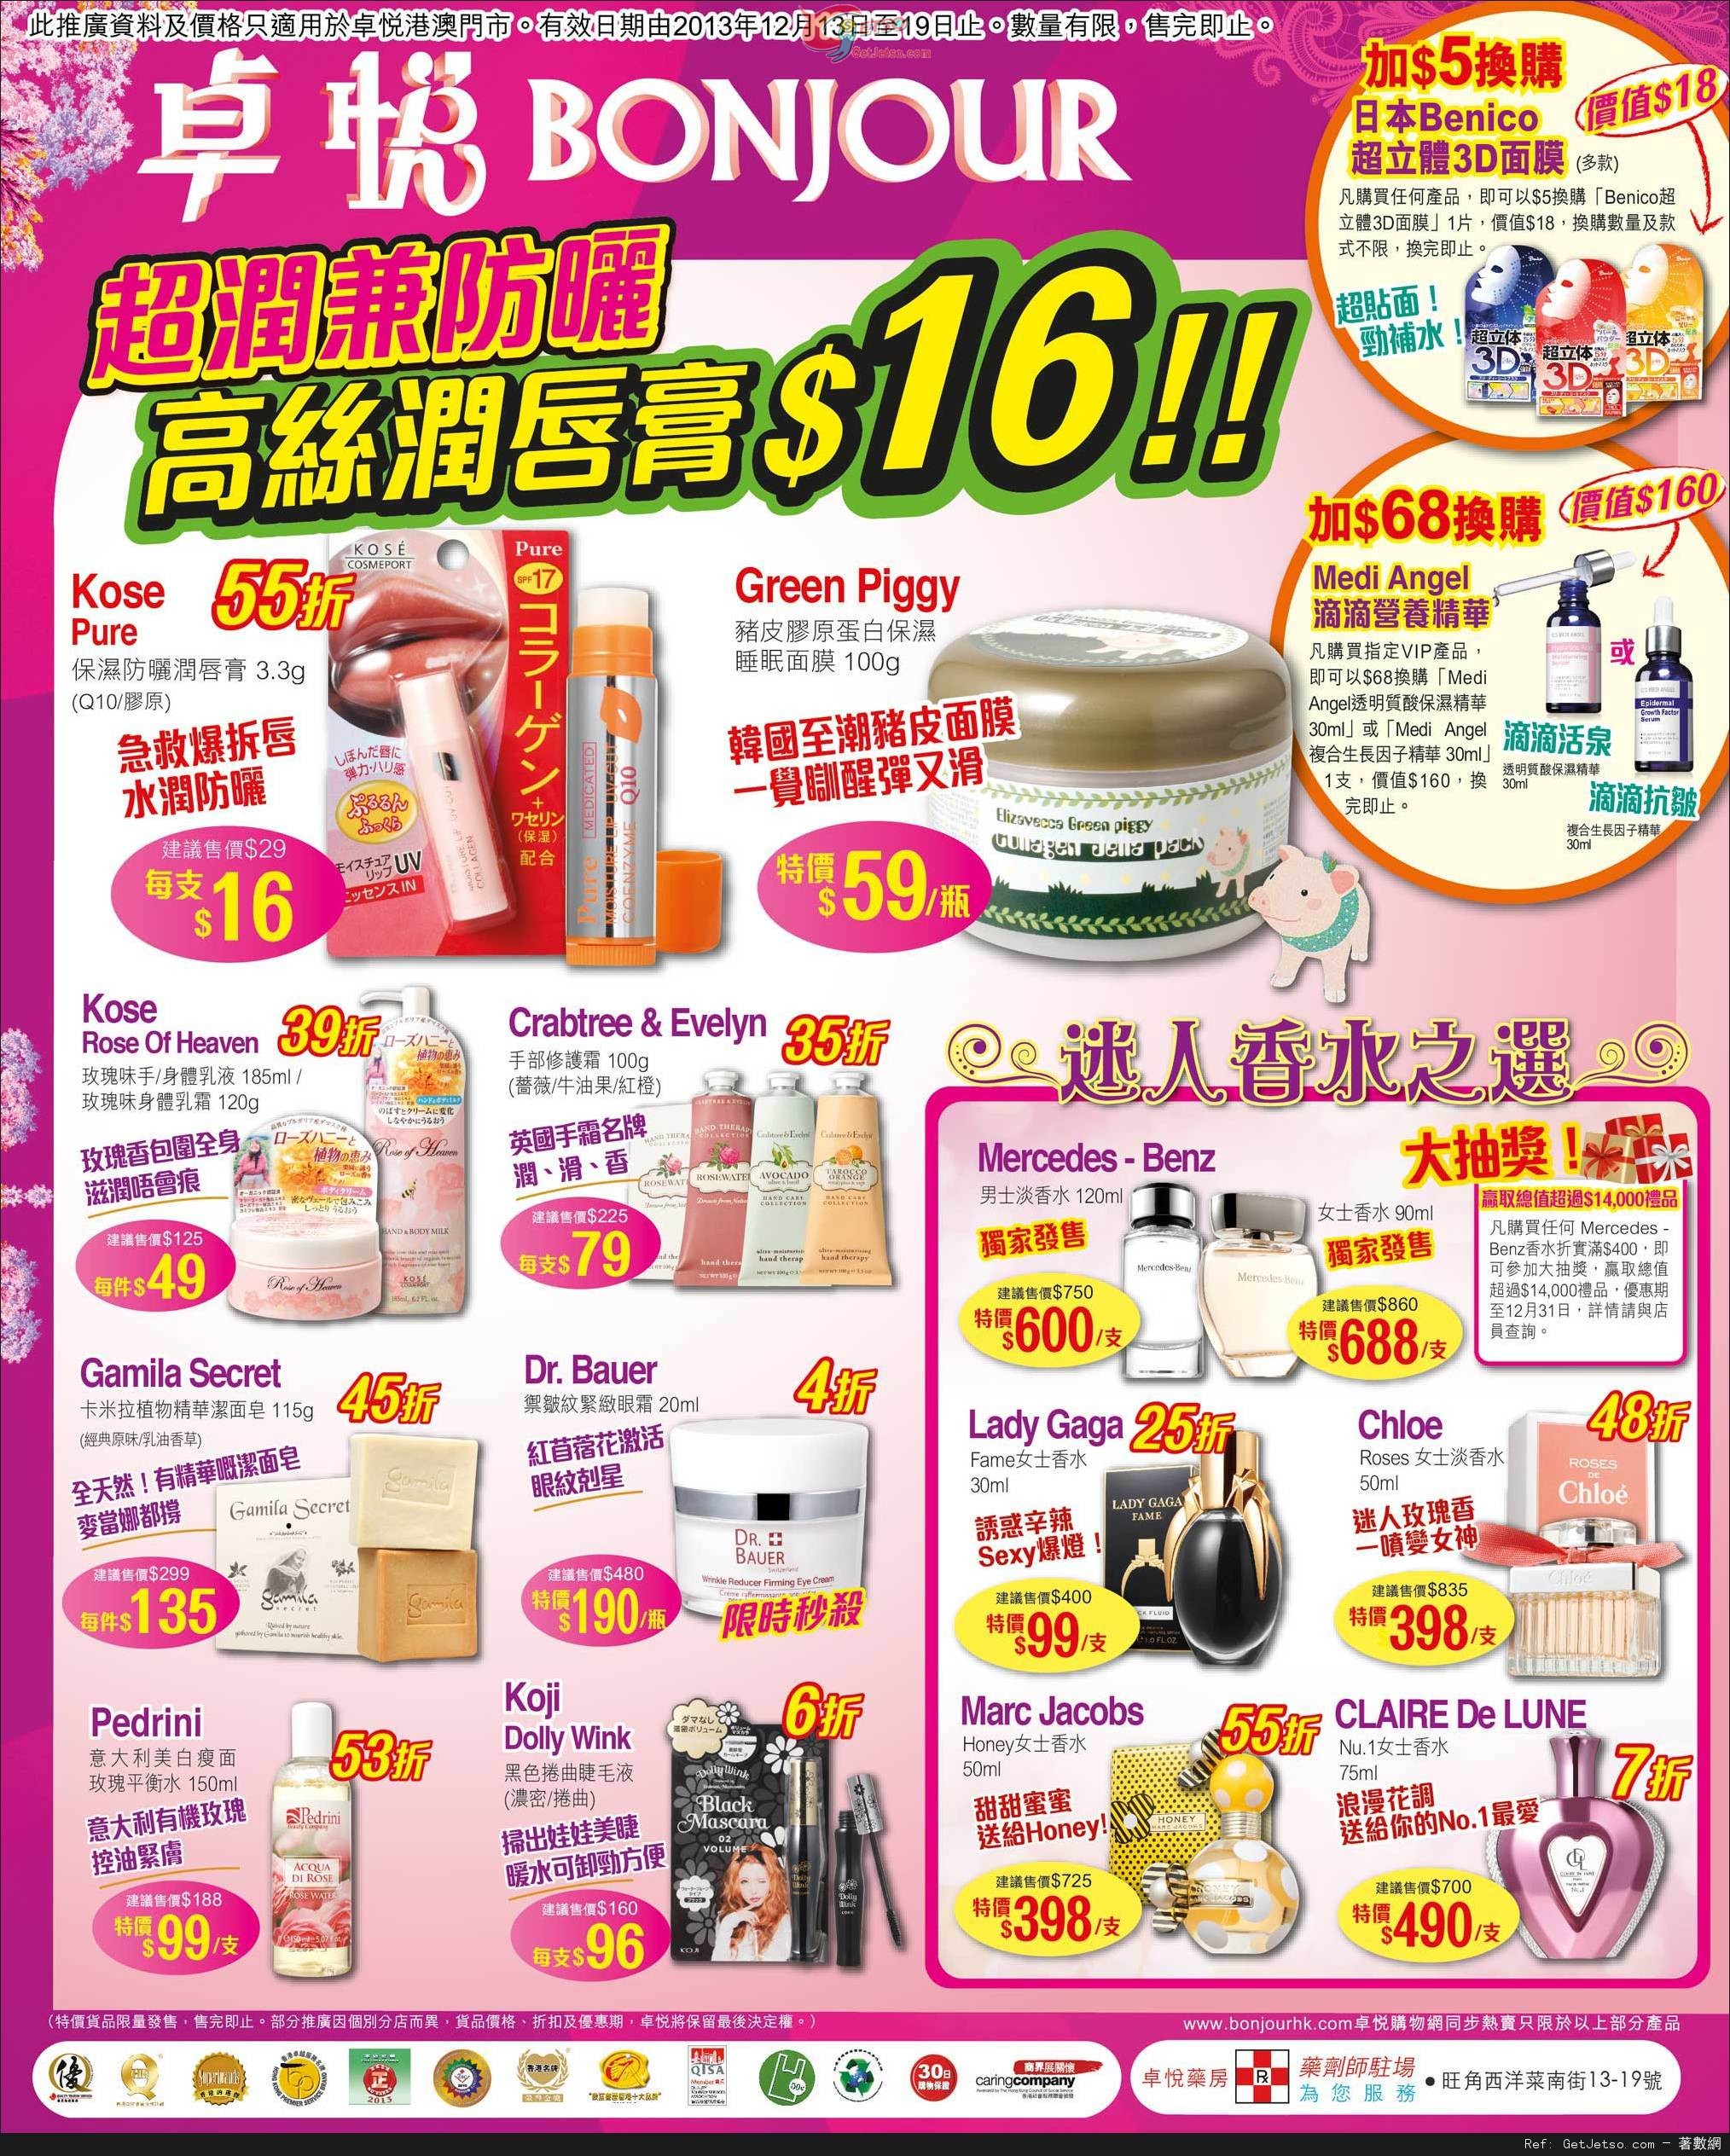 卓悅聖誕彩妝及護膚產品購買優惠(至13年12月19日)圖片2